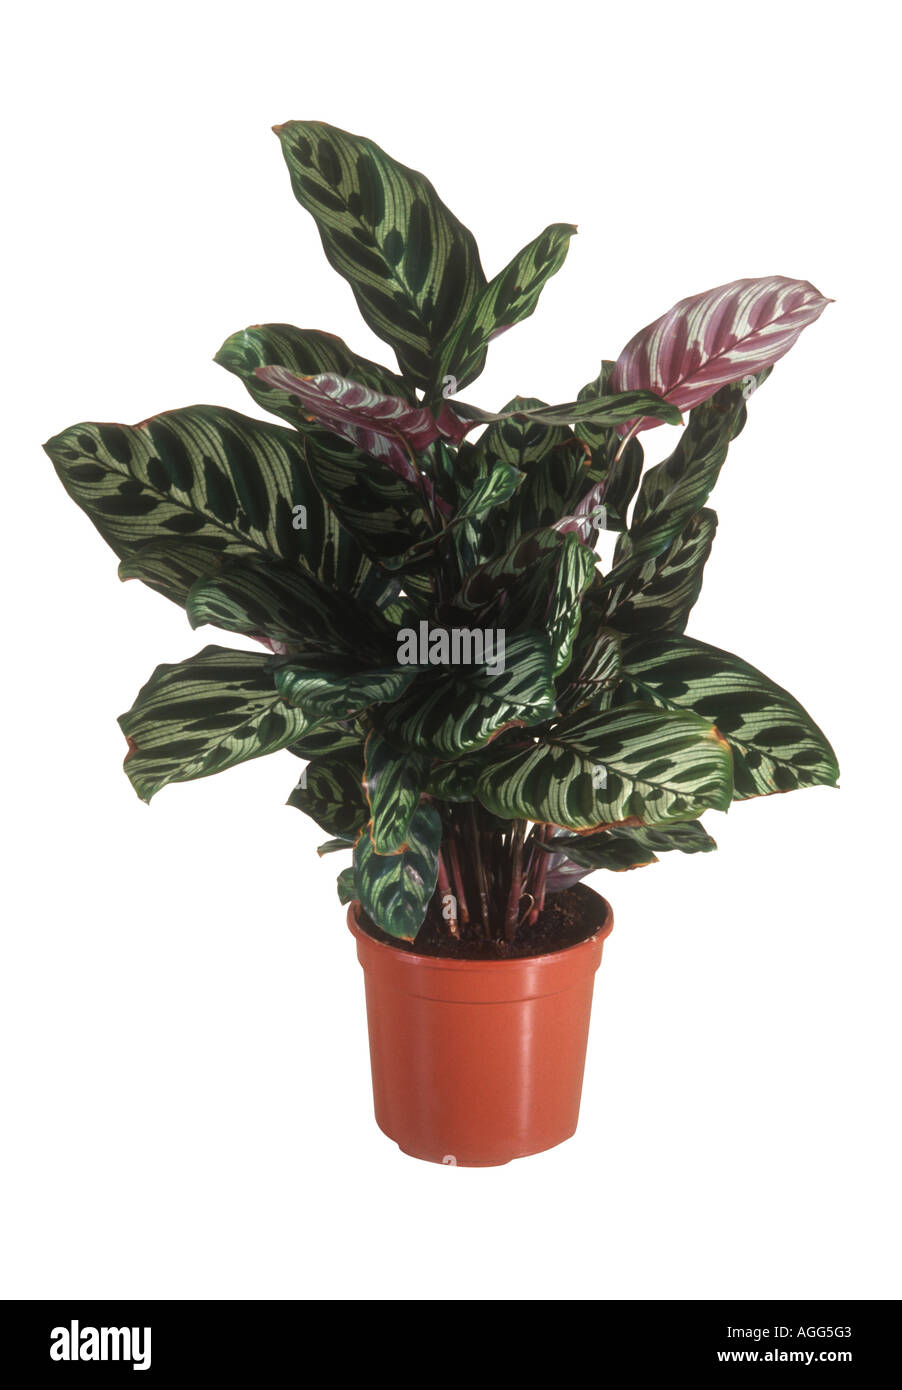 Pfau Pflanze (Calathea Makoyana), Topfpflanze Stockfotografie - Alamy